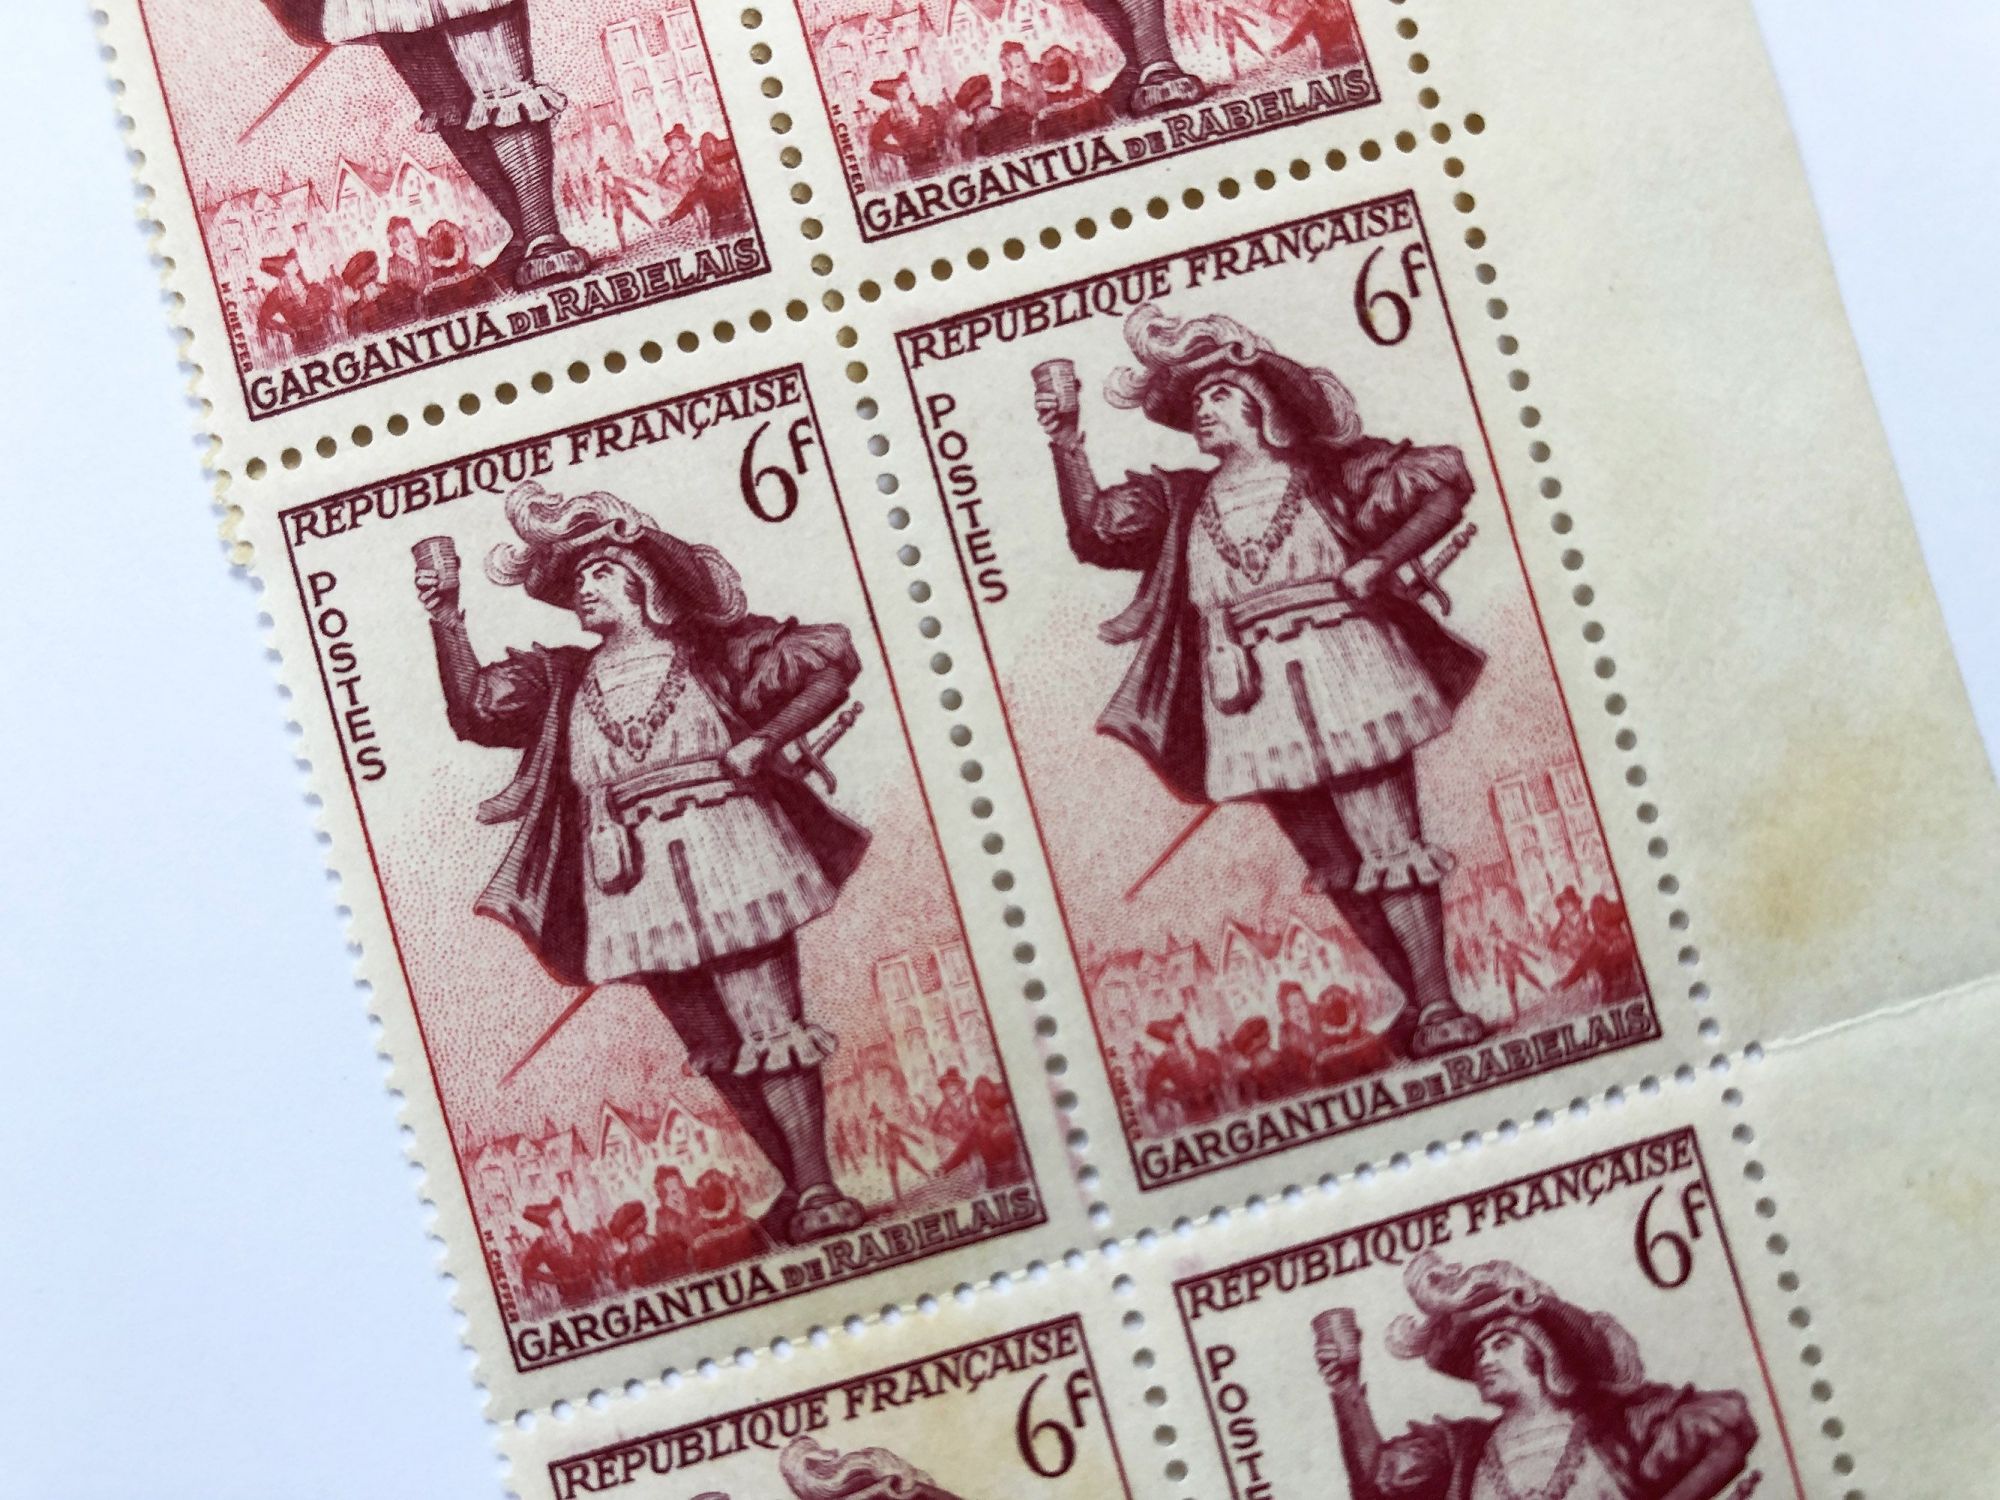 Block of 6 old French stamps representing Gargantua n° 943